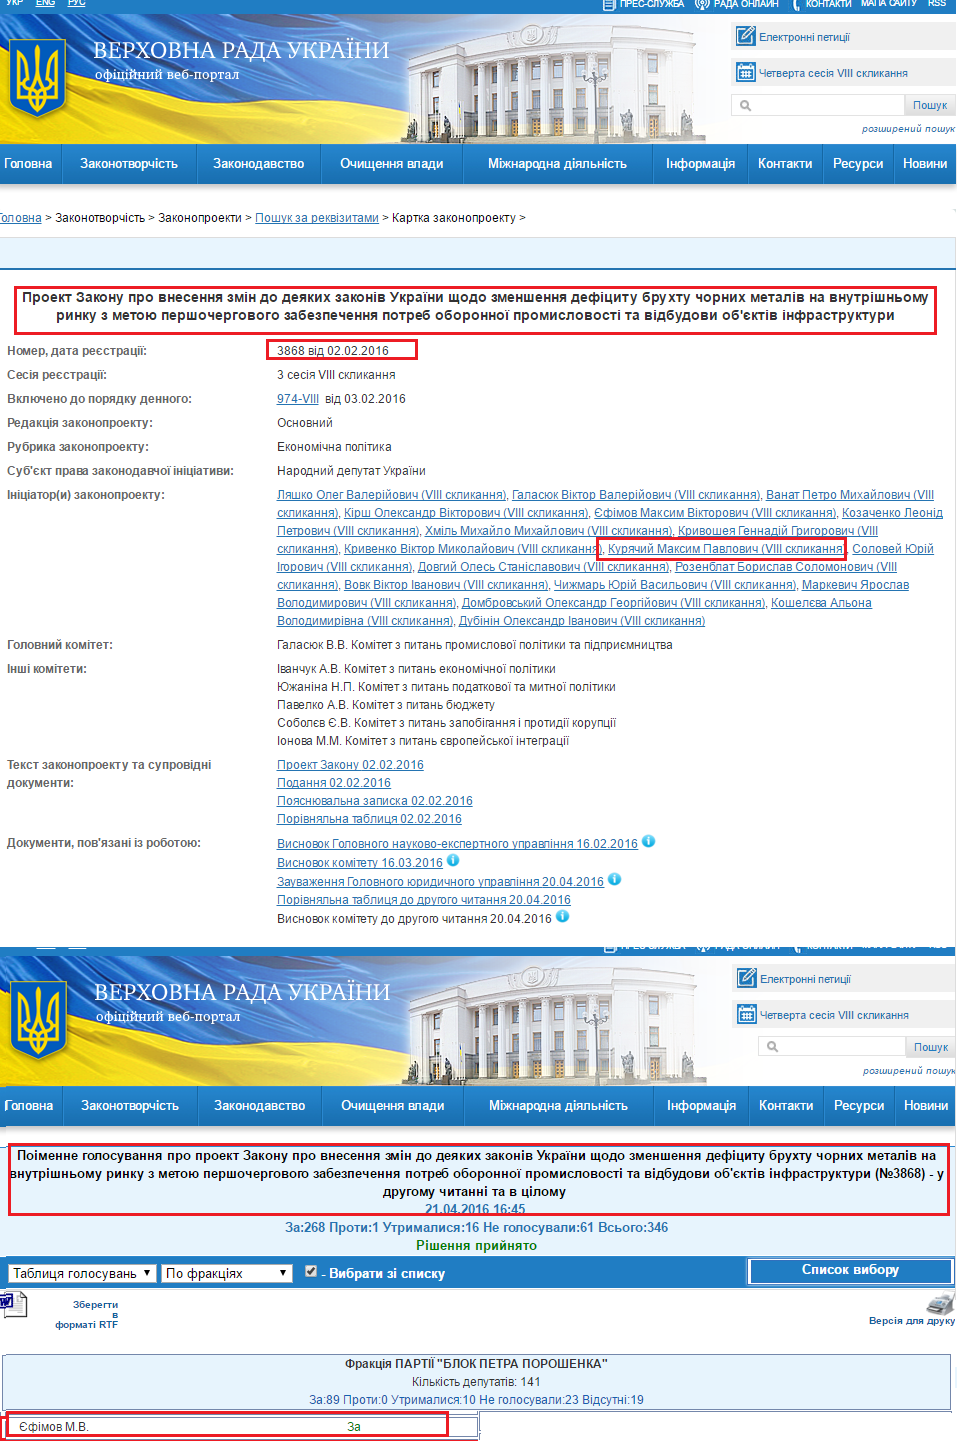 http://112.ua/politika/rada-povysila-eksportnuyu-poshlinu-na-othody-i-lom-chernyh-metallov-do-30-evro-za-tonnu-306762.html